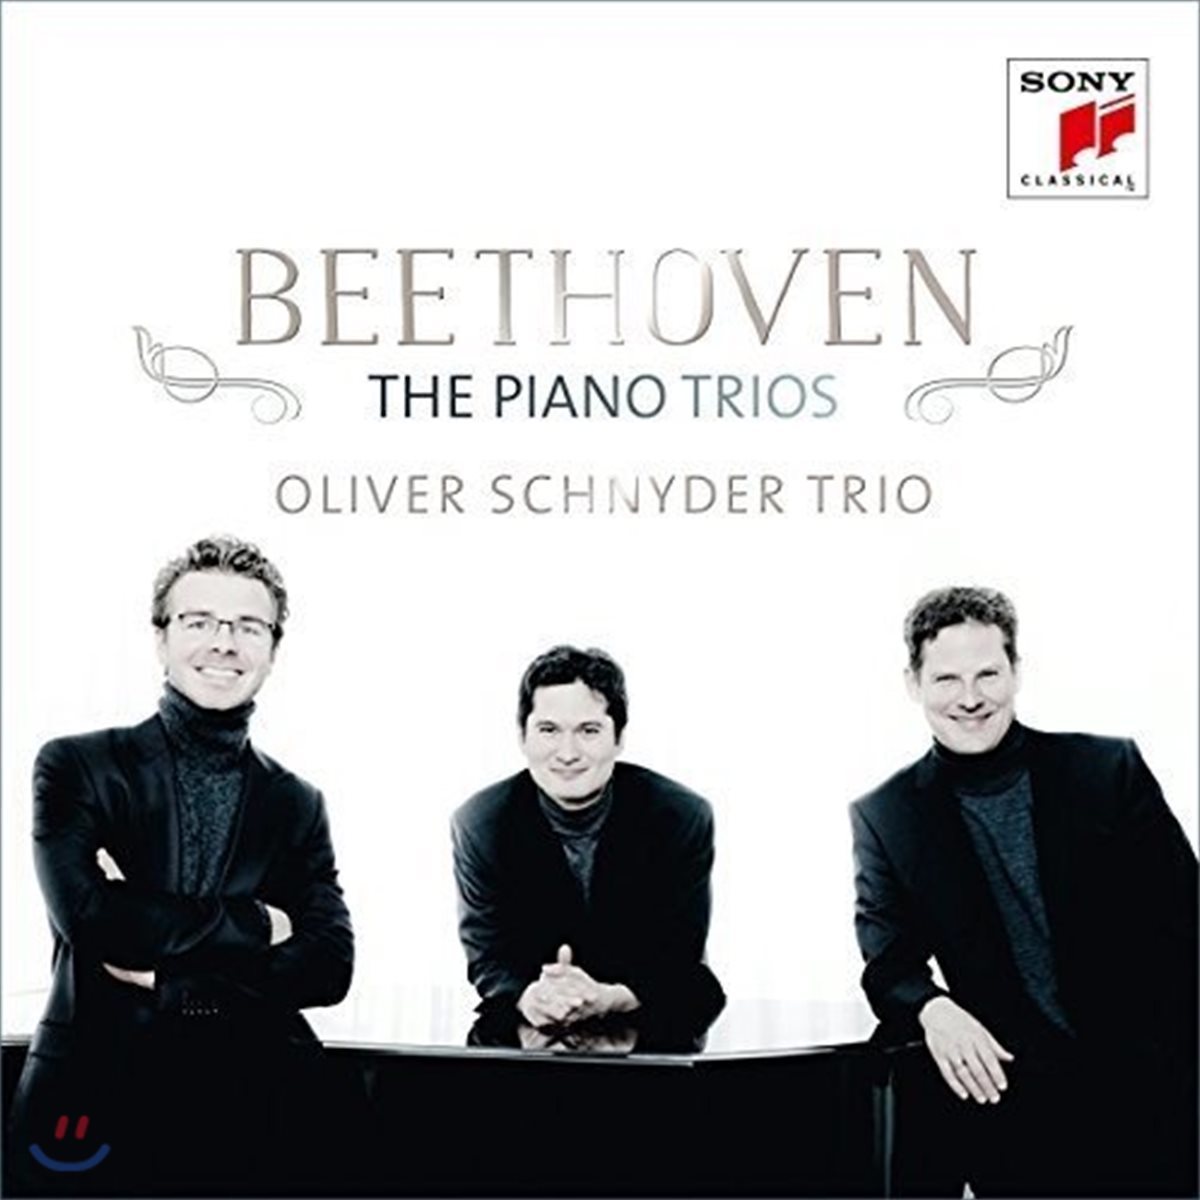 Oliver Schnyder Trio 베토벤: 피아노 삼중주 1-7번 전곡집 - 올리버 슈나이더 트리오 (Beethoven: The Piano Trios)